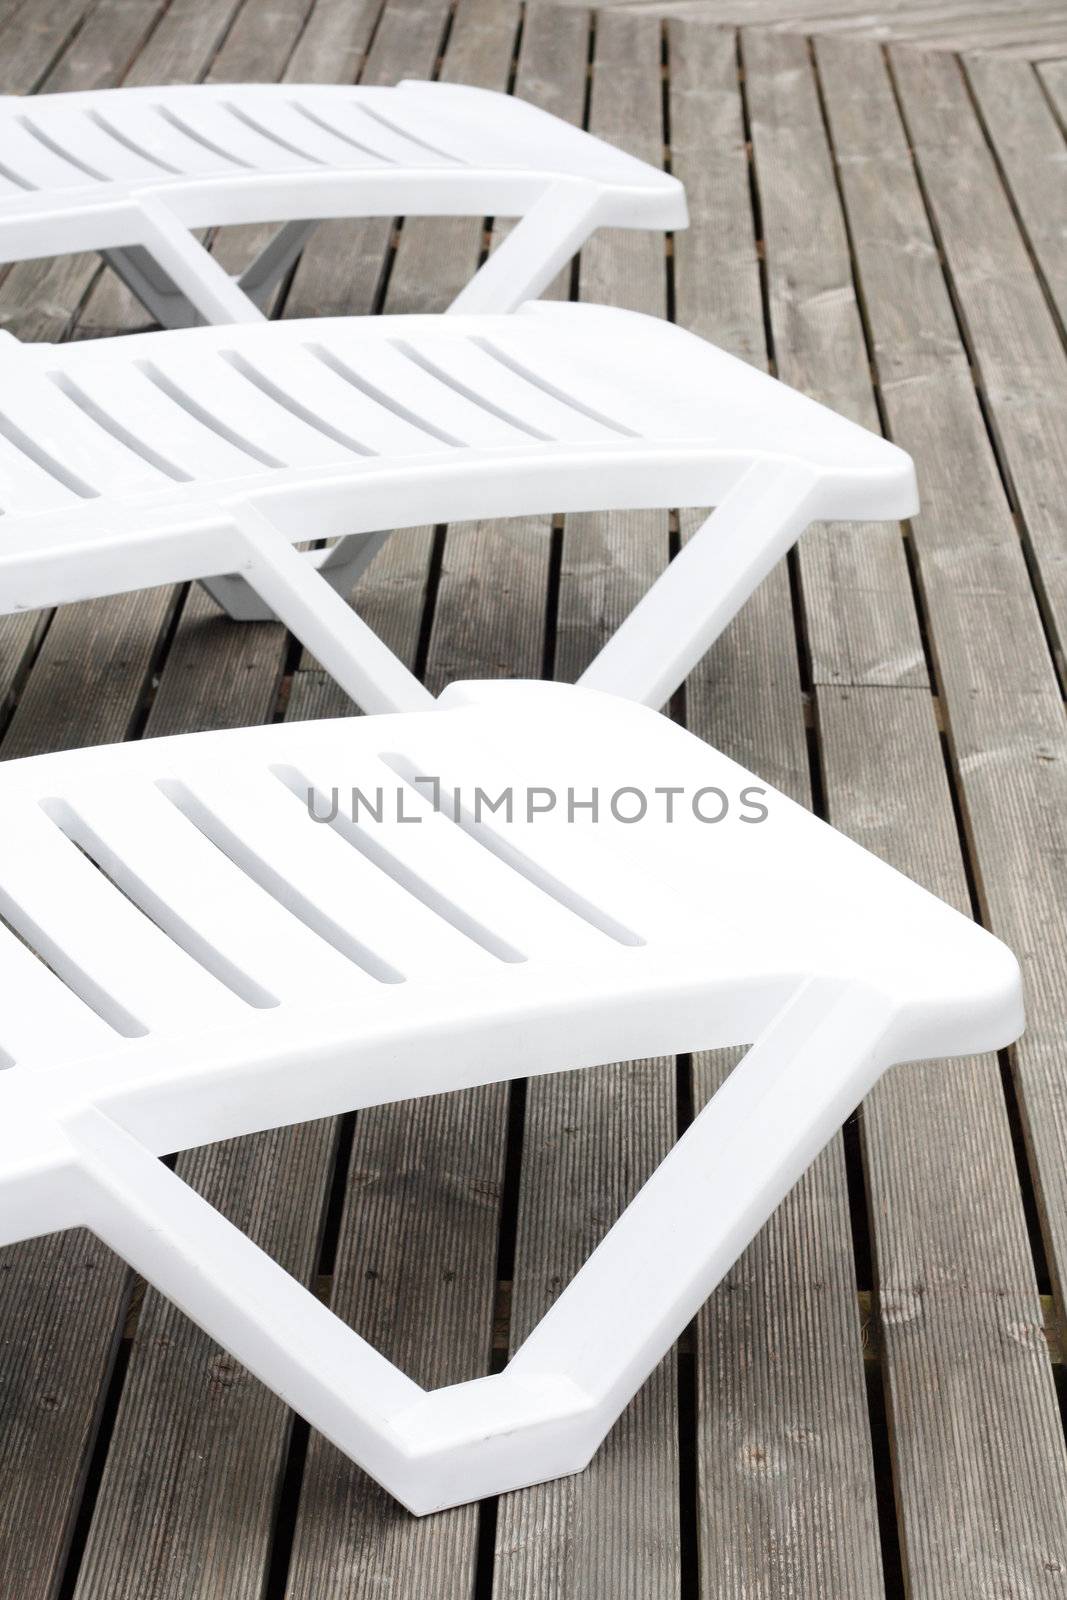 Poolside chairs by leeser